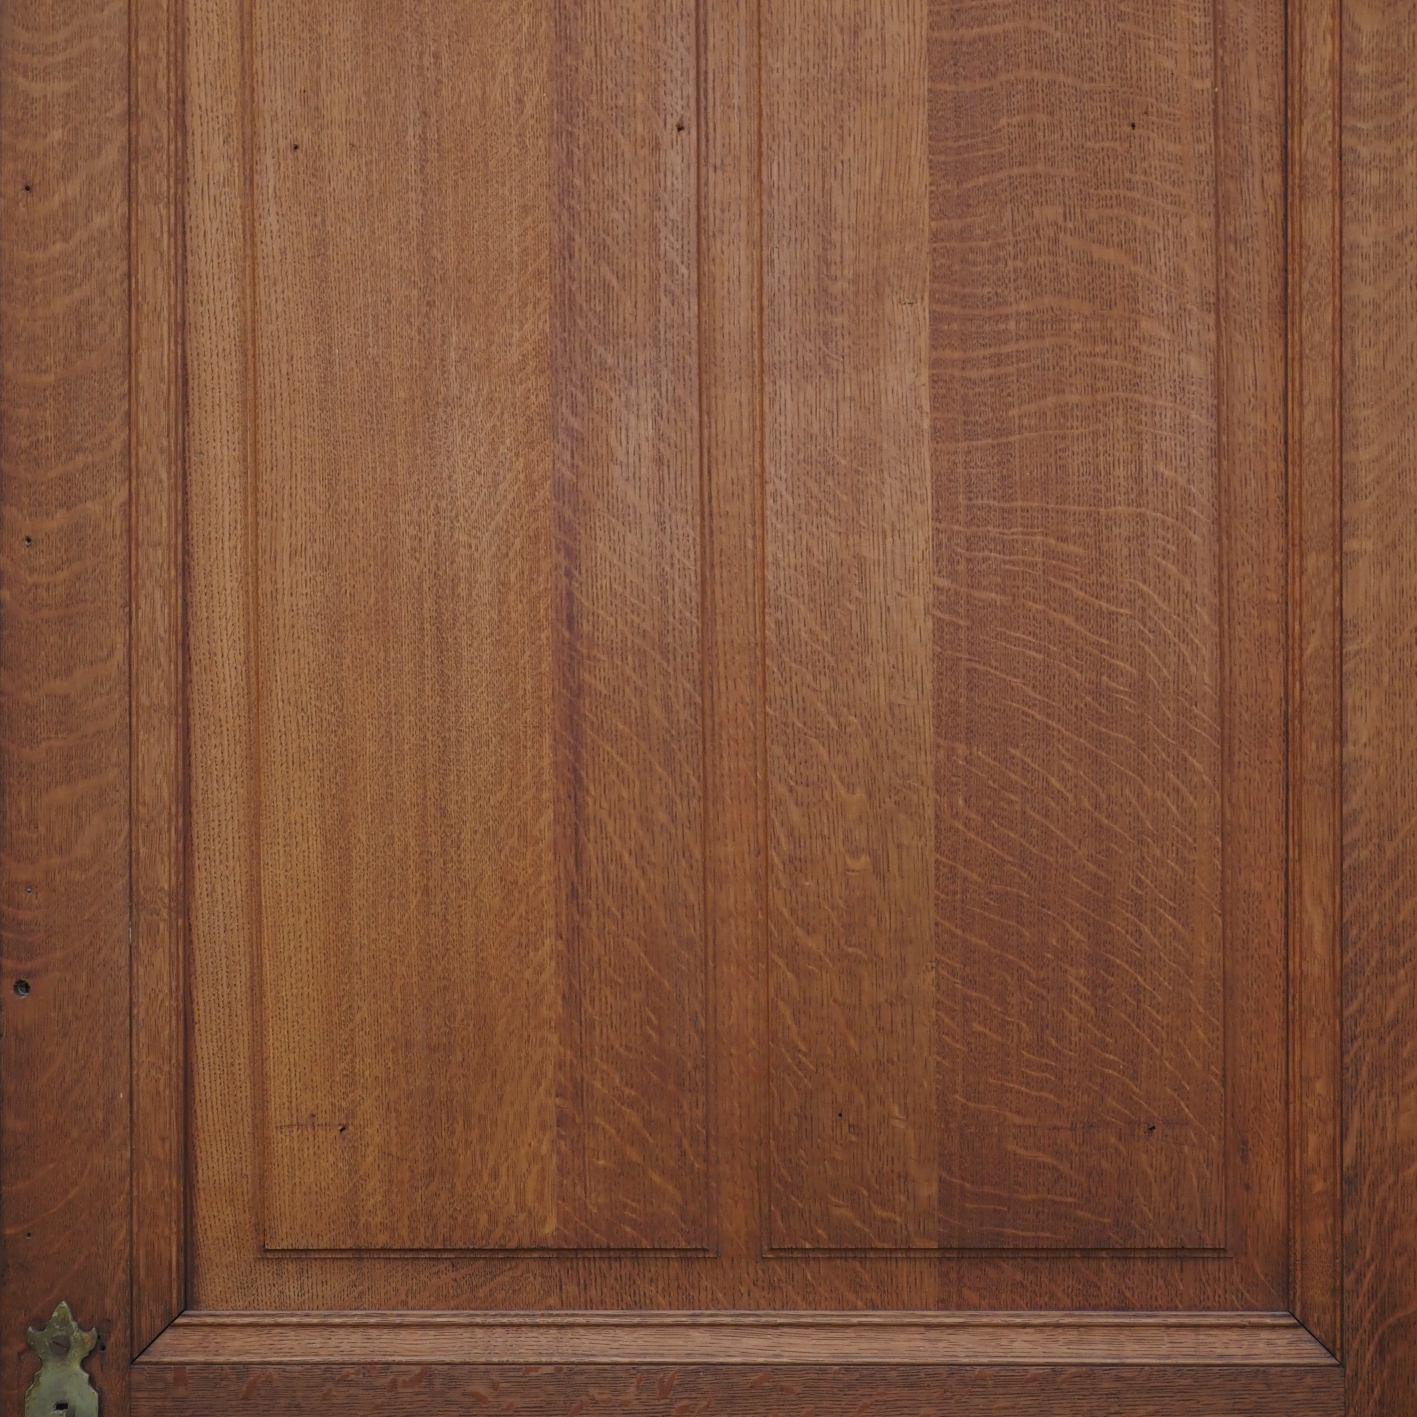 Door in solid wood (H. 246 x W. 90,5 cm) - Left